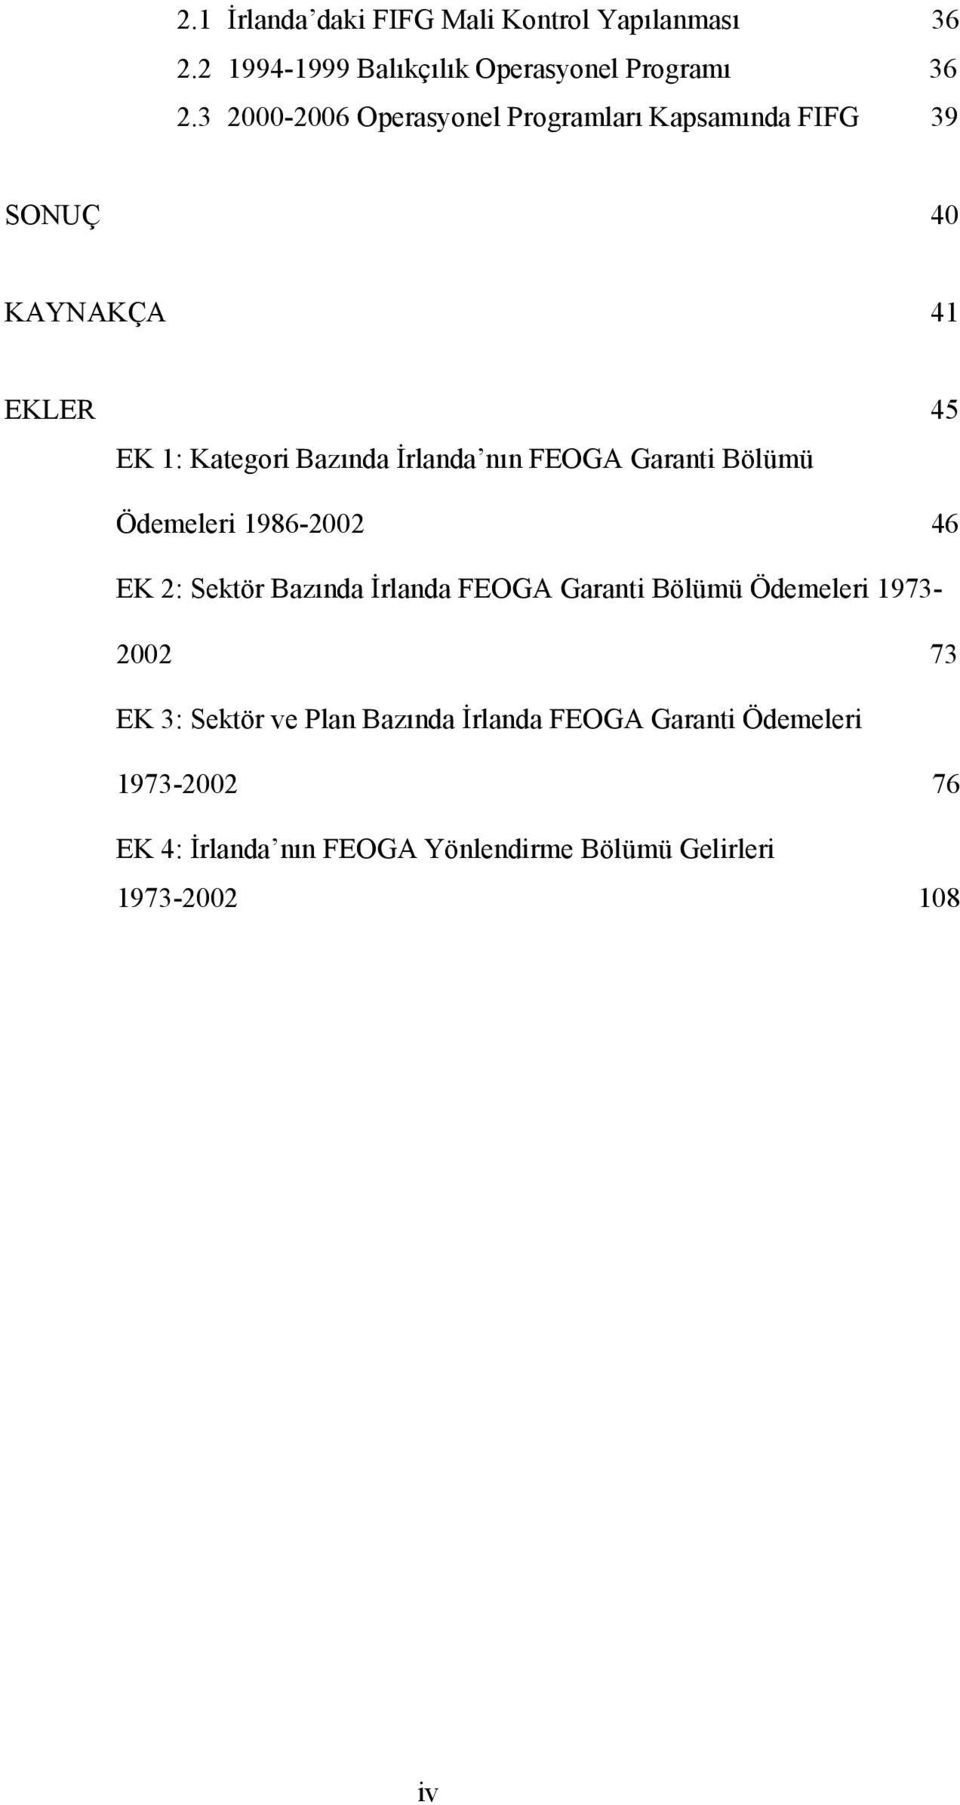 FEOGA Garanti Bölümü Ödemeleri 1986-2002 46 EK 2: Sektör Bazında İrlanda FEOGA Garanti Bölümü Ödemeleri 1973-2002 73 EK